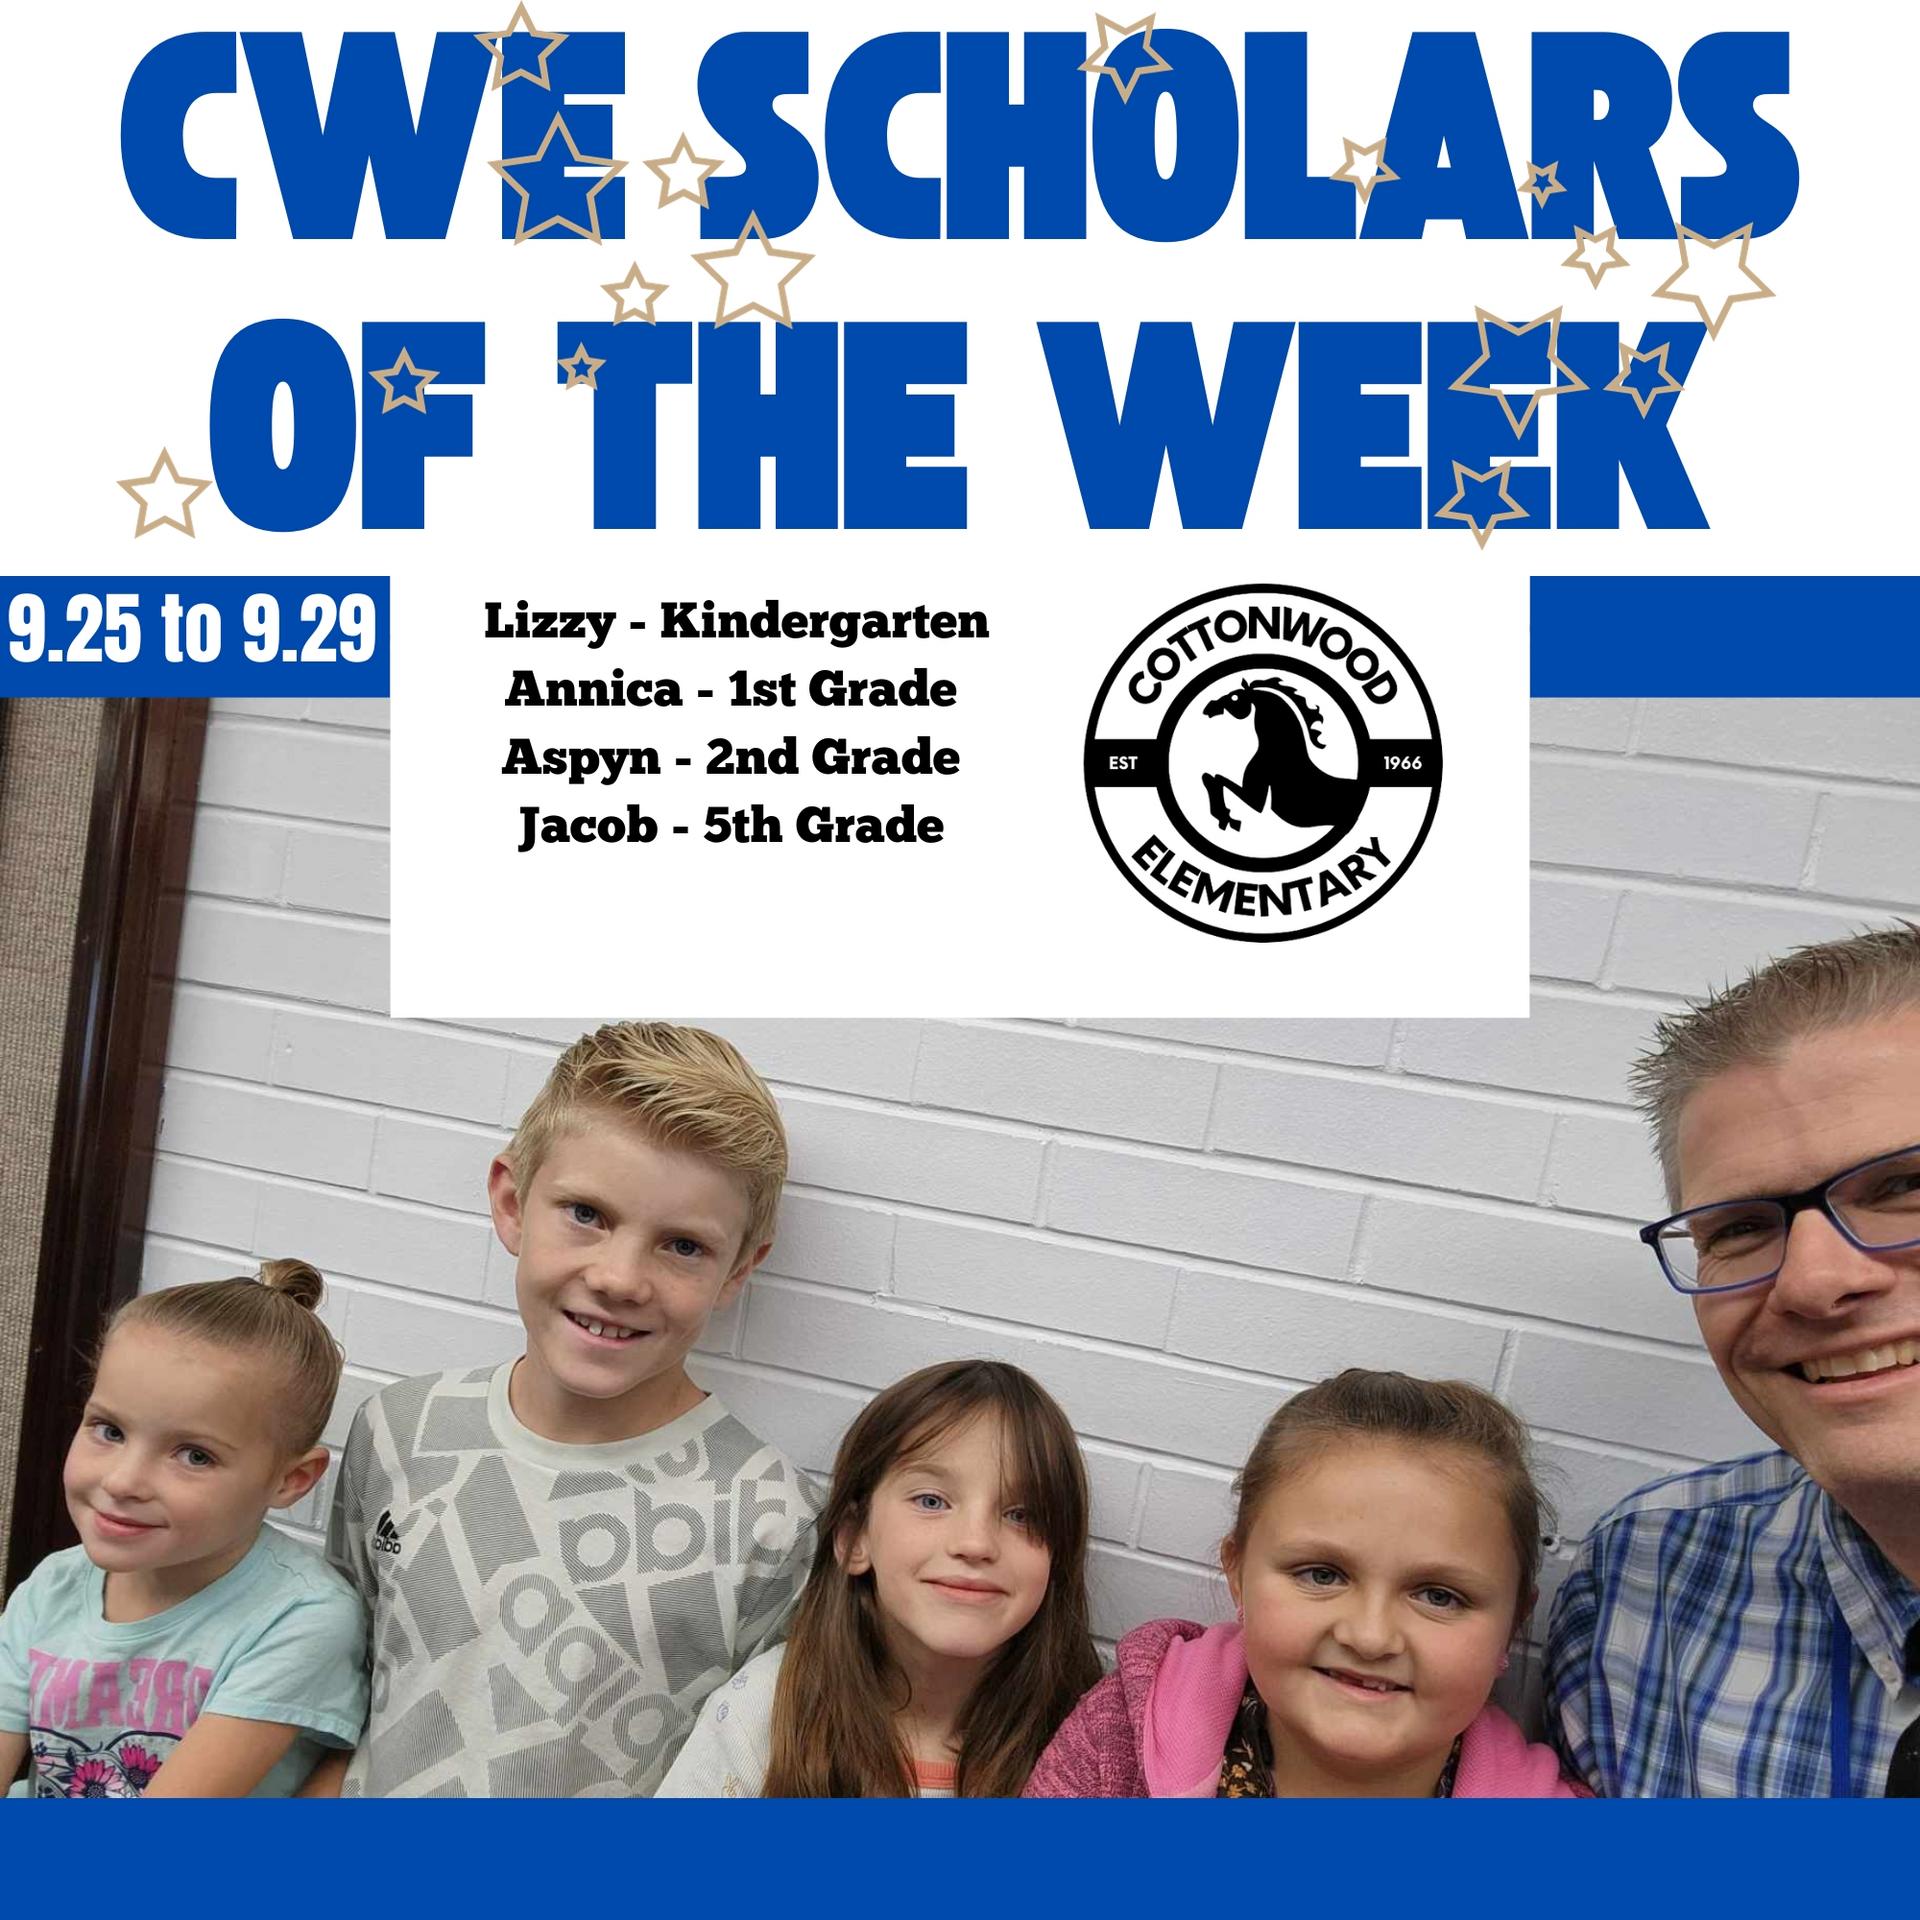 CWE-Scholars-of-the-Week-9-25-to-9-29.jpg